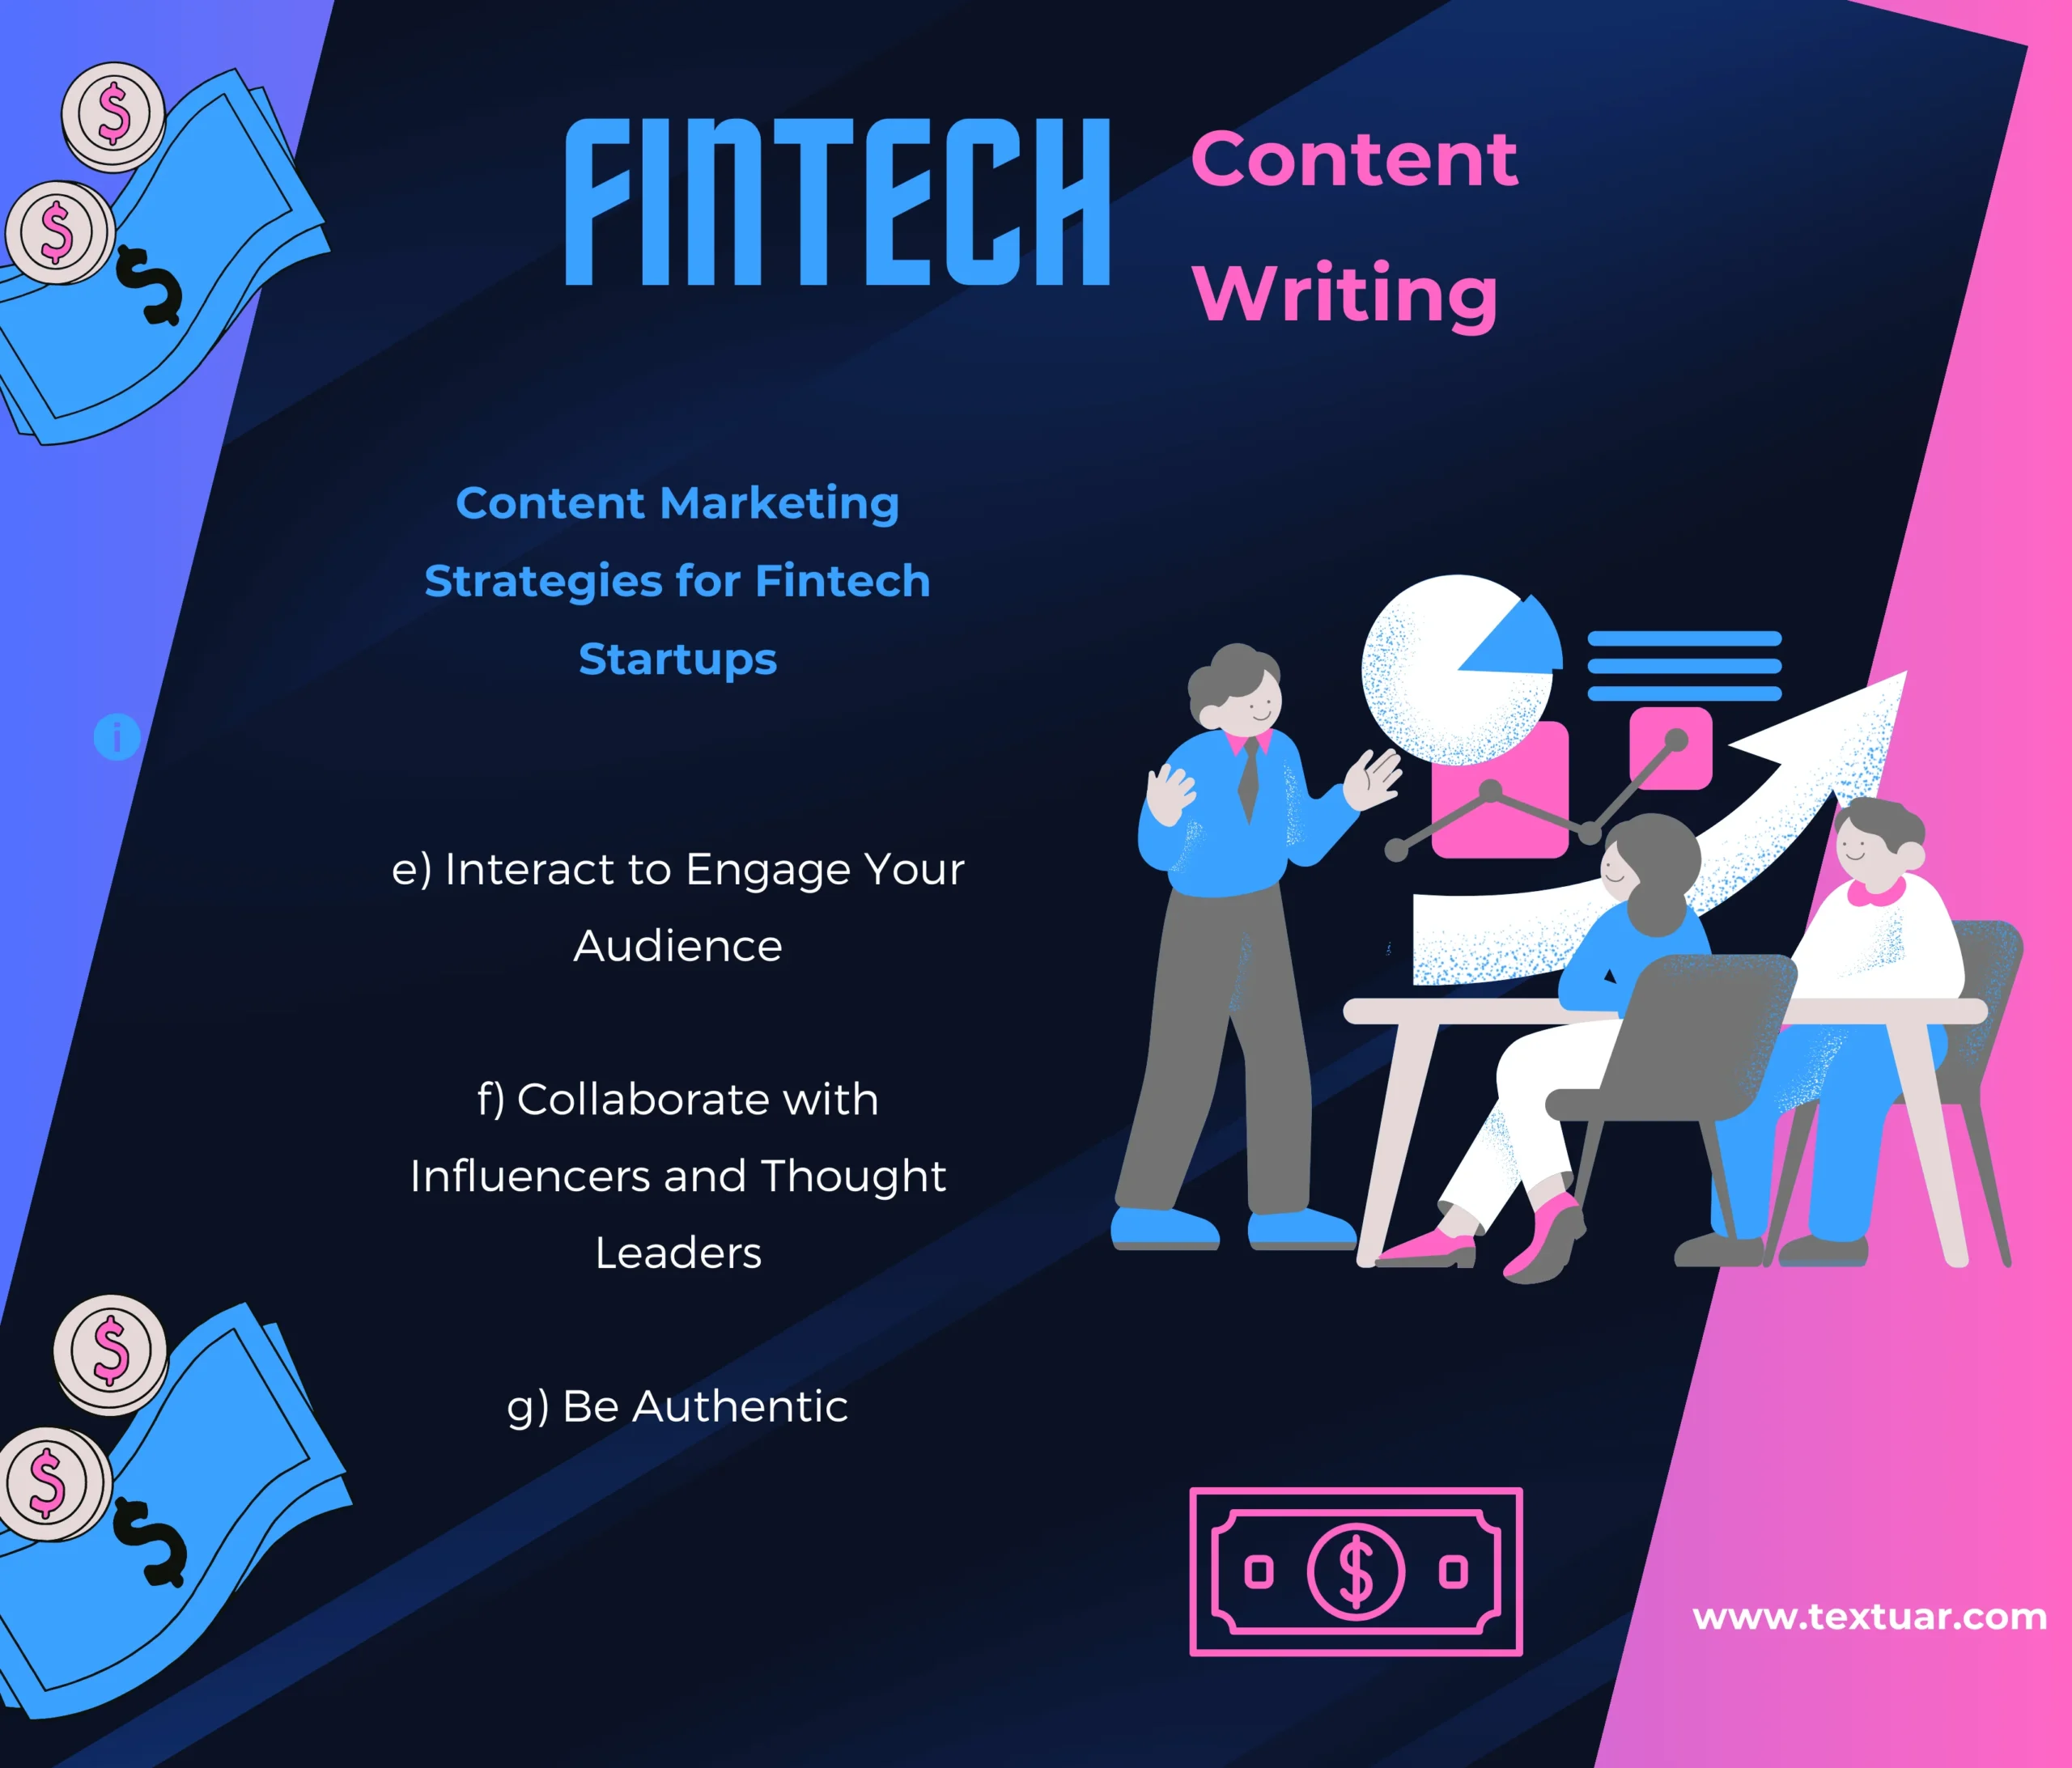 fintech-content-writing-company